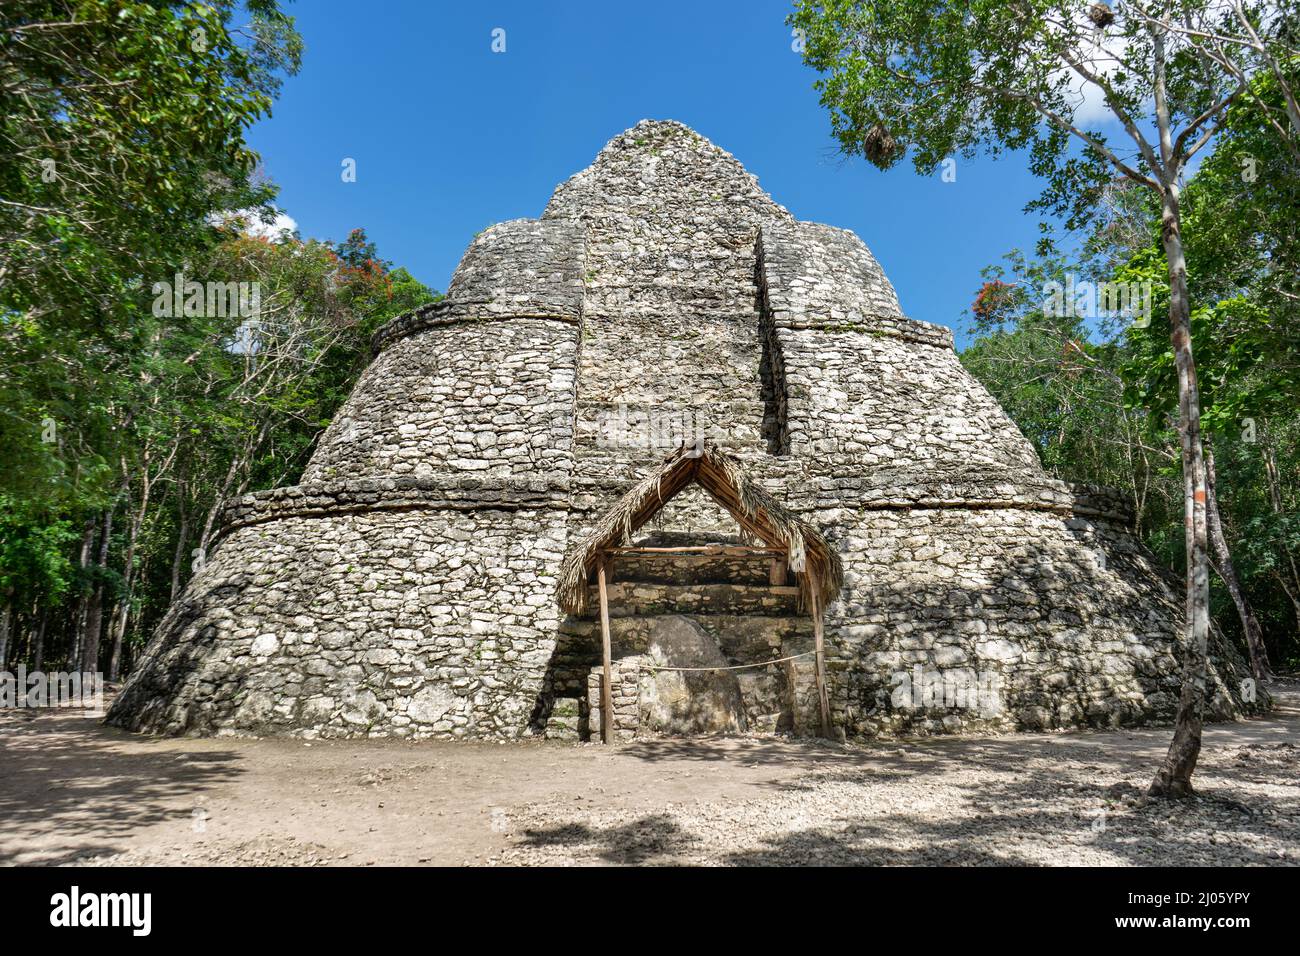 Mayan observatory ruins at Coba, Mexico Stock Photo